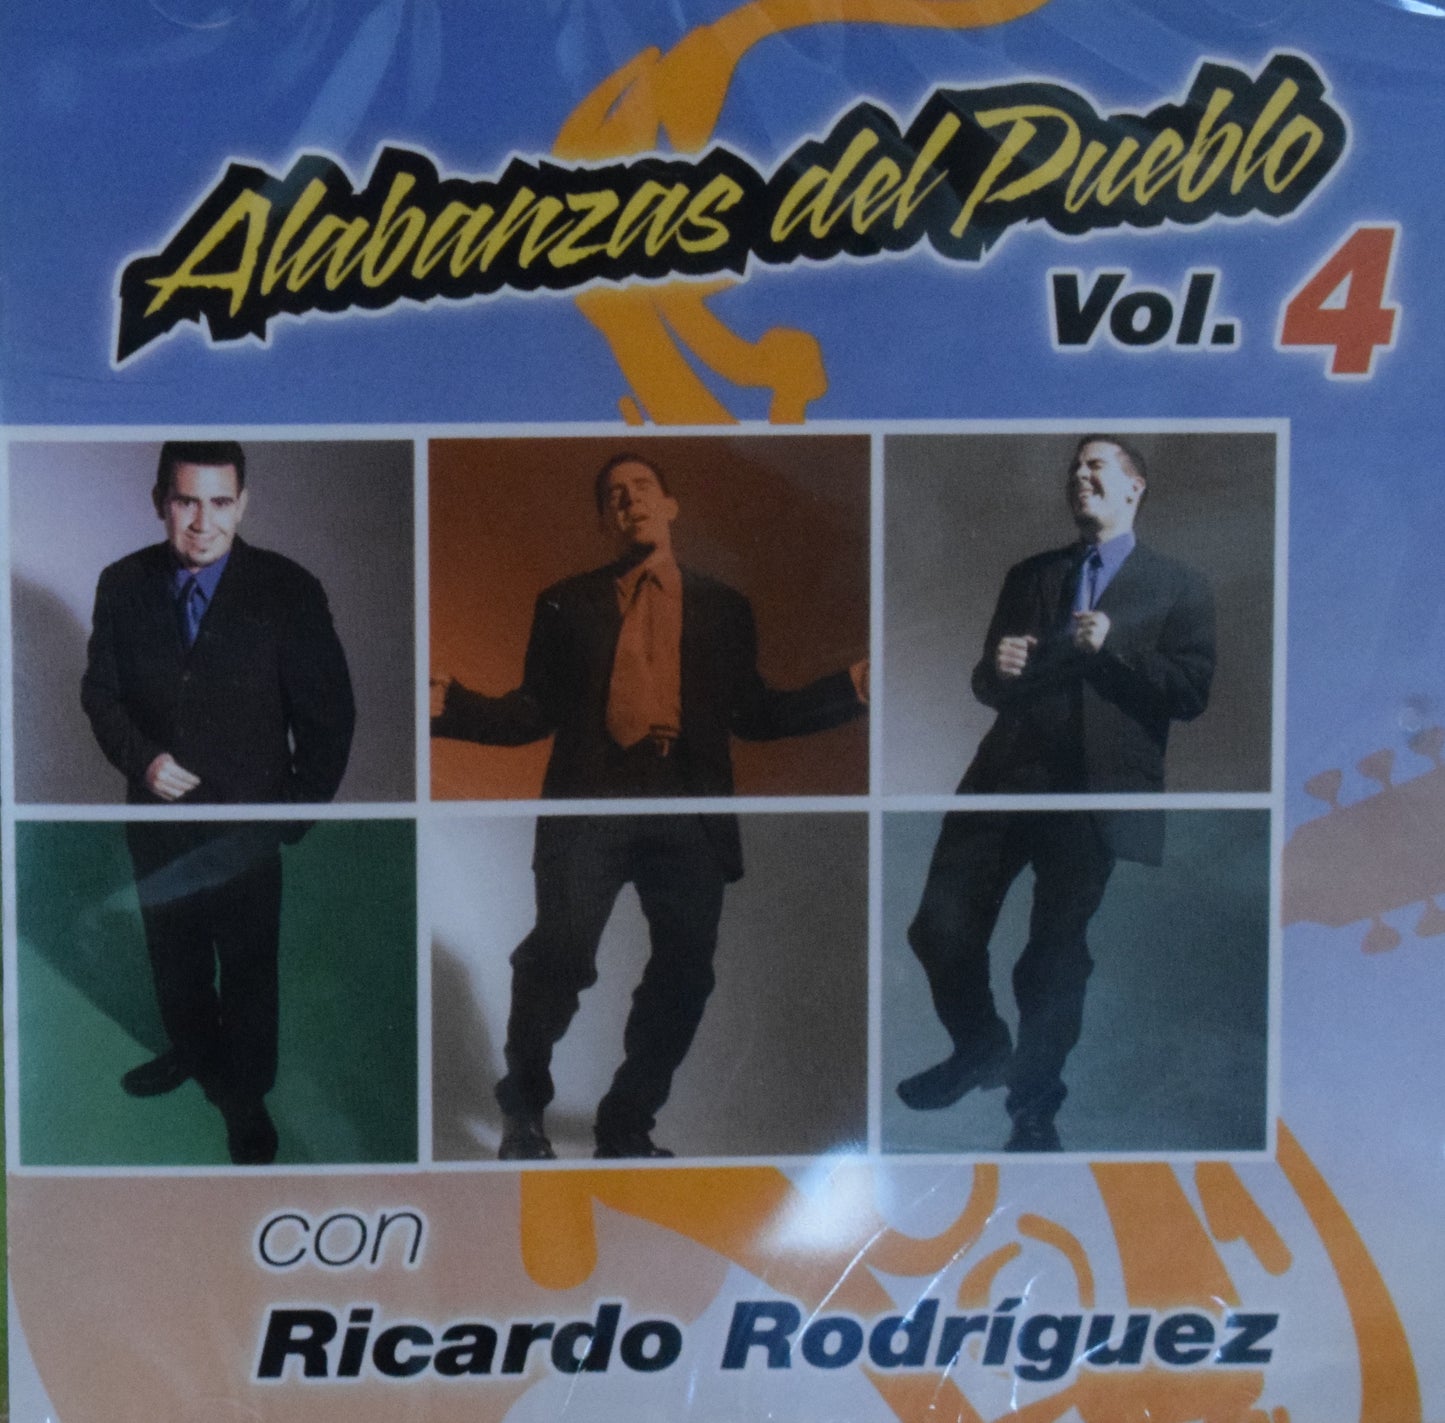 CD – Alabanzas del Pueblo Vol. 4 – Ricardo Rodríguez